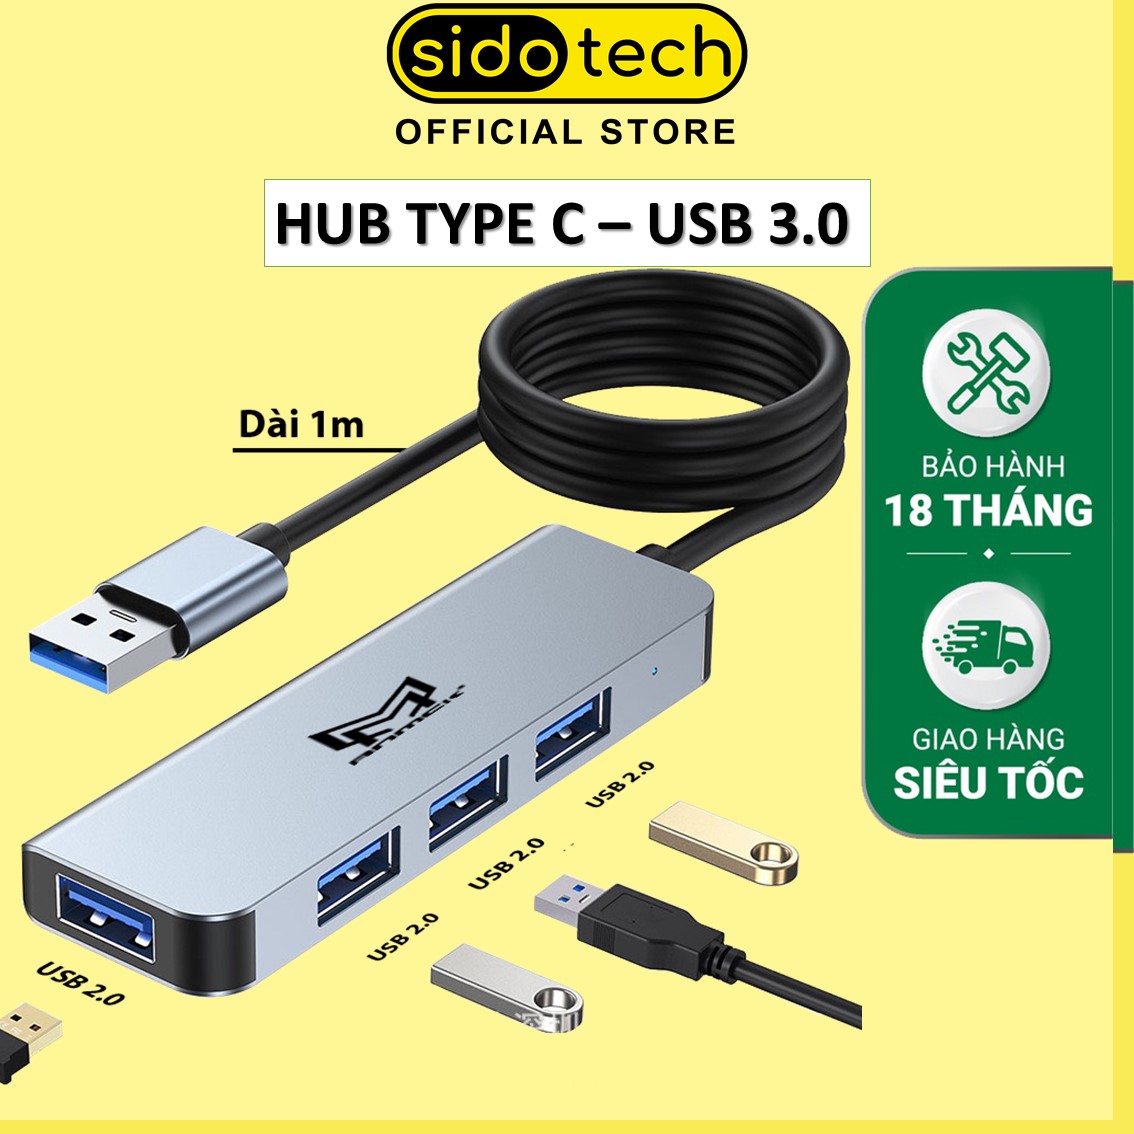 HUB USB 2.0 SIDOTECH K89 dây dài 1m bộ chia chuyển đổi 4 port 2.0 mở rộng kết nối tốc độ cao nhỏ gọn dành cho máy tính laptop PC hỗ trợ sạc pin kết nối đa năng ổ cứng bàn phím chuột máy in, thiết bị ổ chia usb